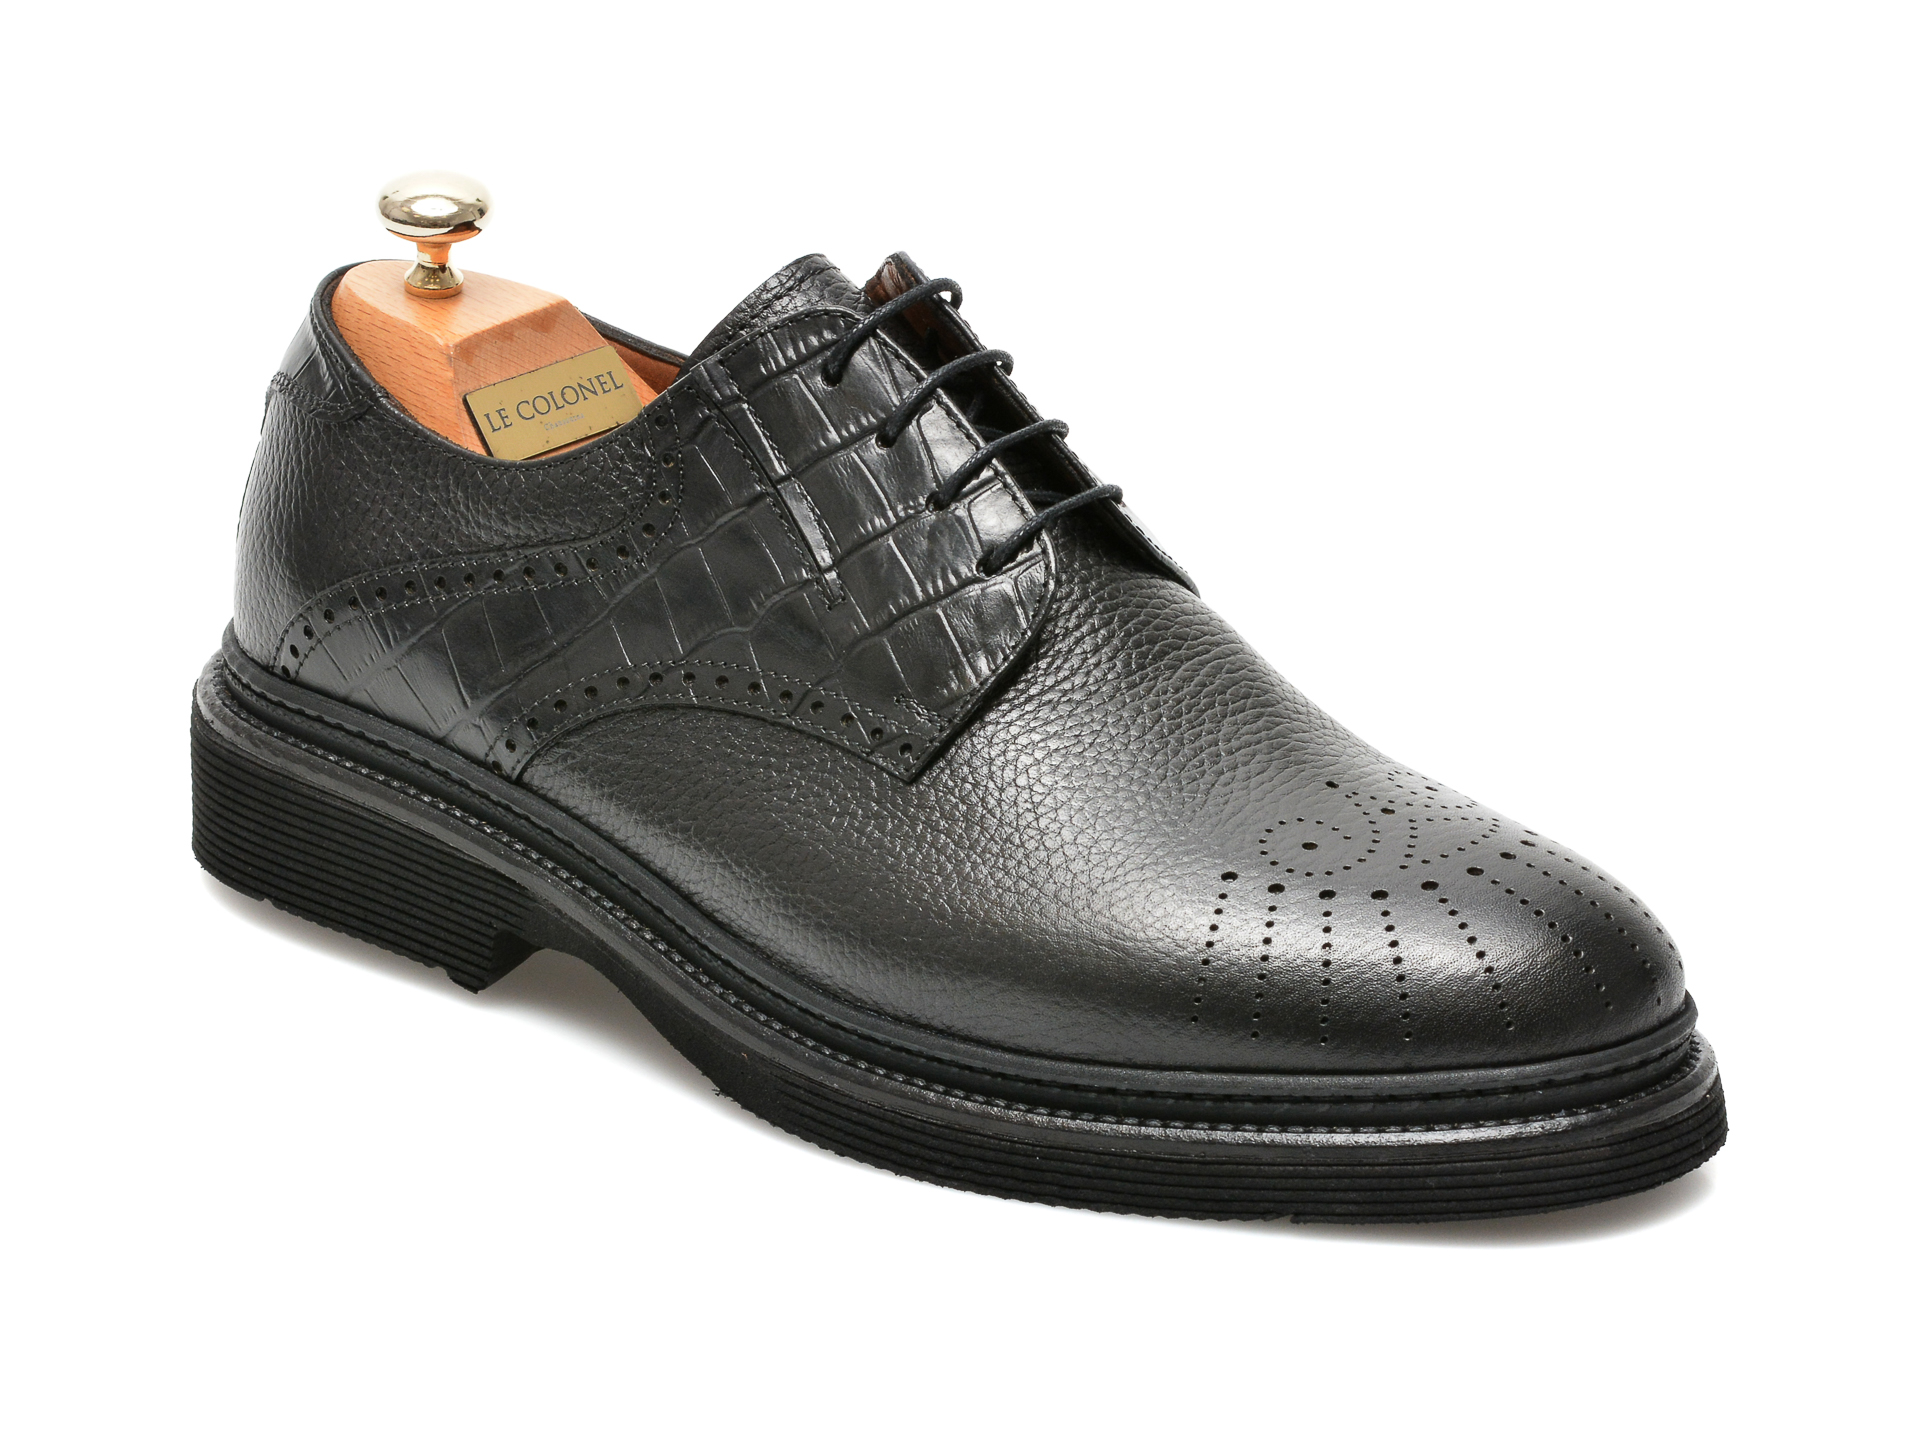 Pantofi LE COLONEL negri, 61722, din piele naturala Le Colonel imagine 2022 reducere